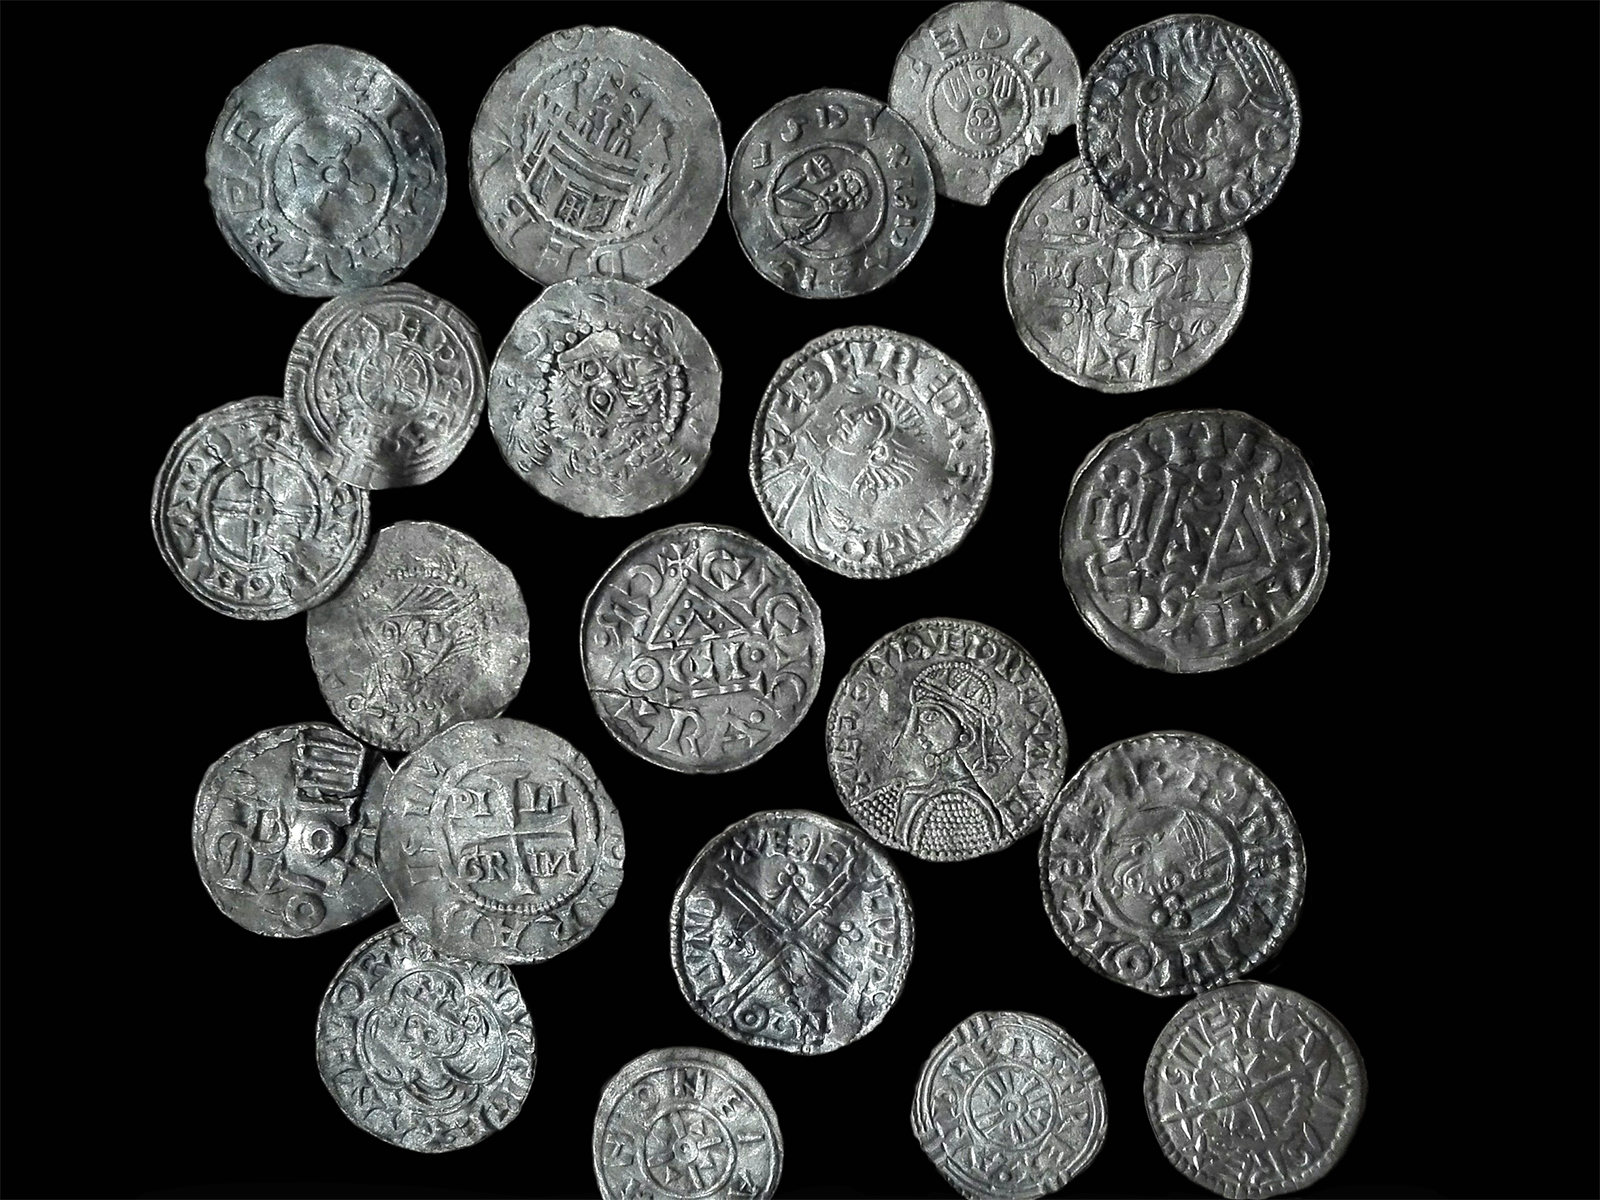 Dwadzieścia trzy srebrne monety pokryte wybitymi napisami oraz symbolami.